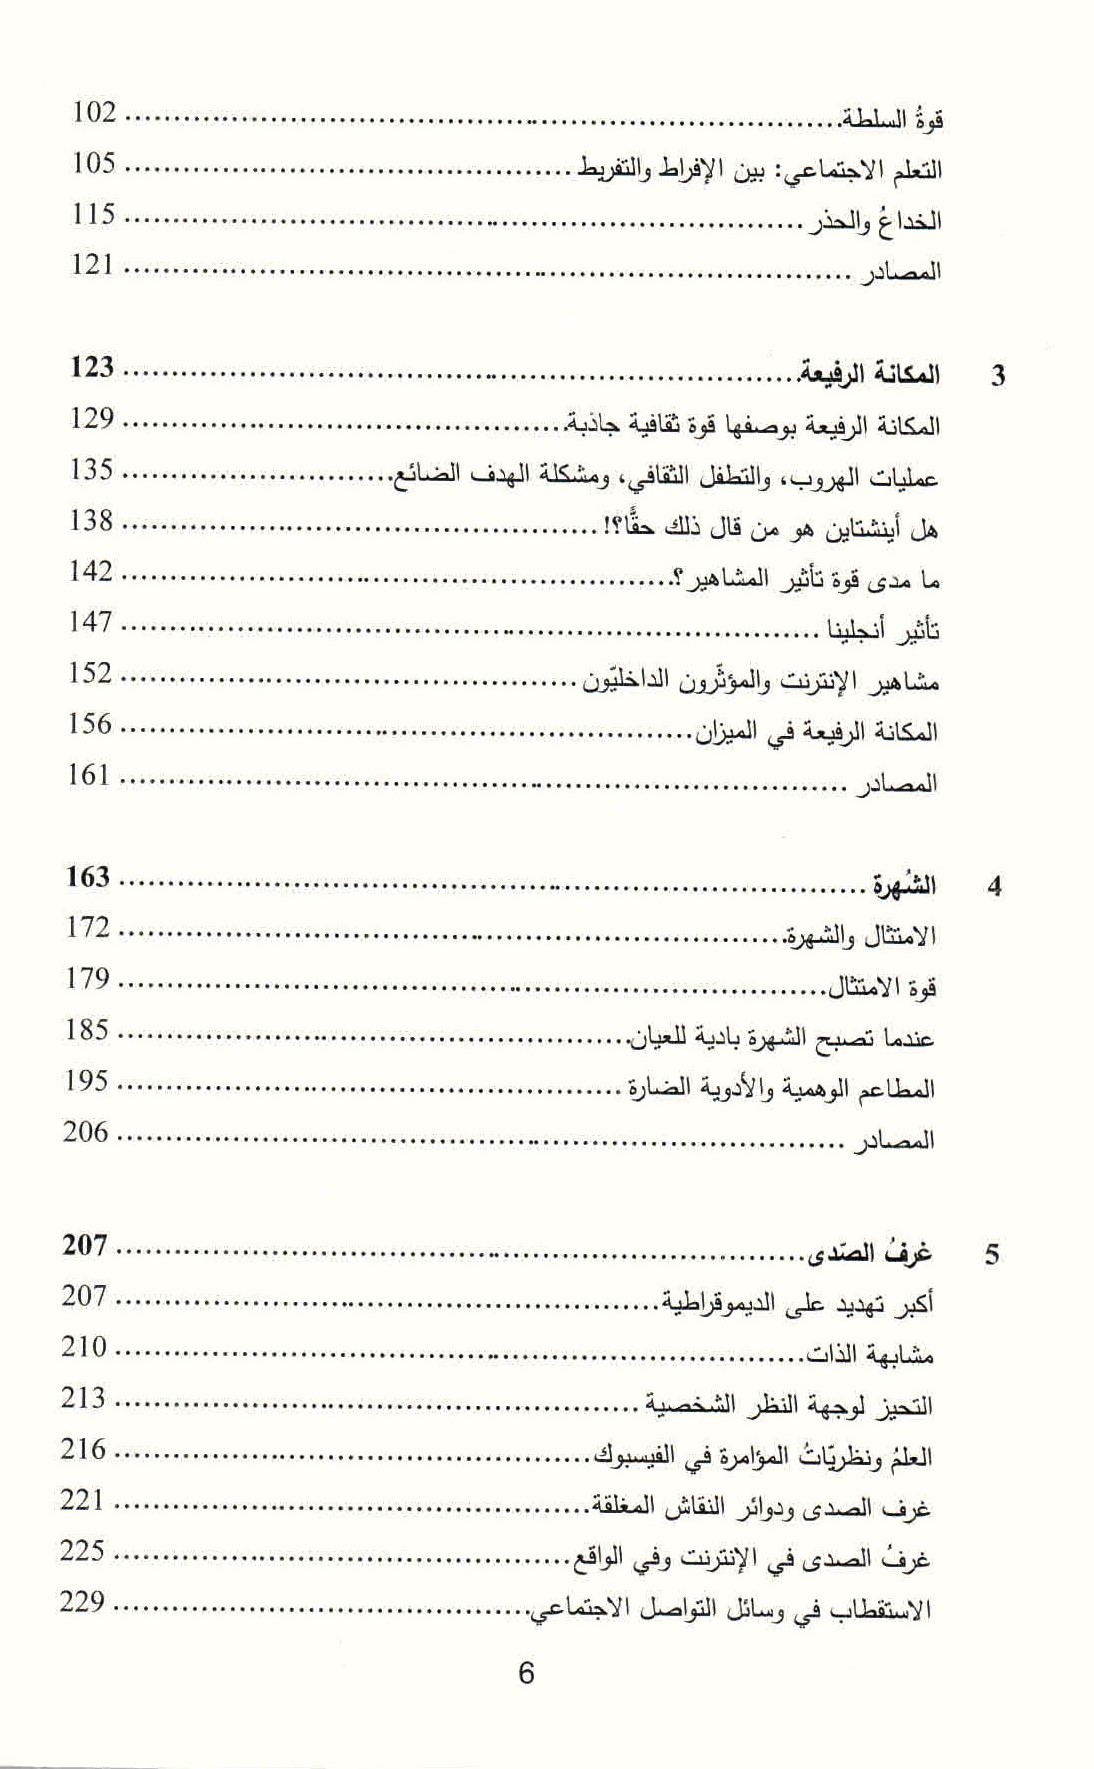 قائمة محتويات كتاب التطور الثفافي في العصر الرقمي ص. 6